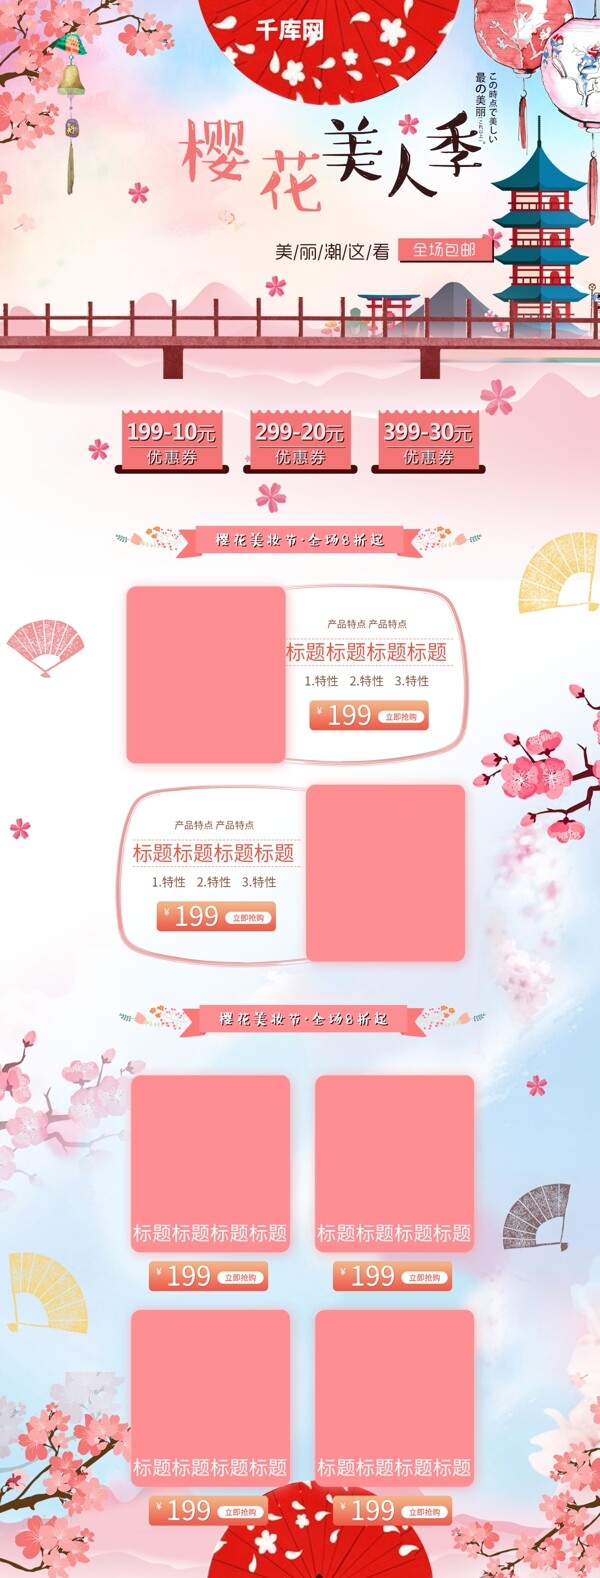 粉色浪漫樱花日系美妆护肤首页模板